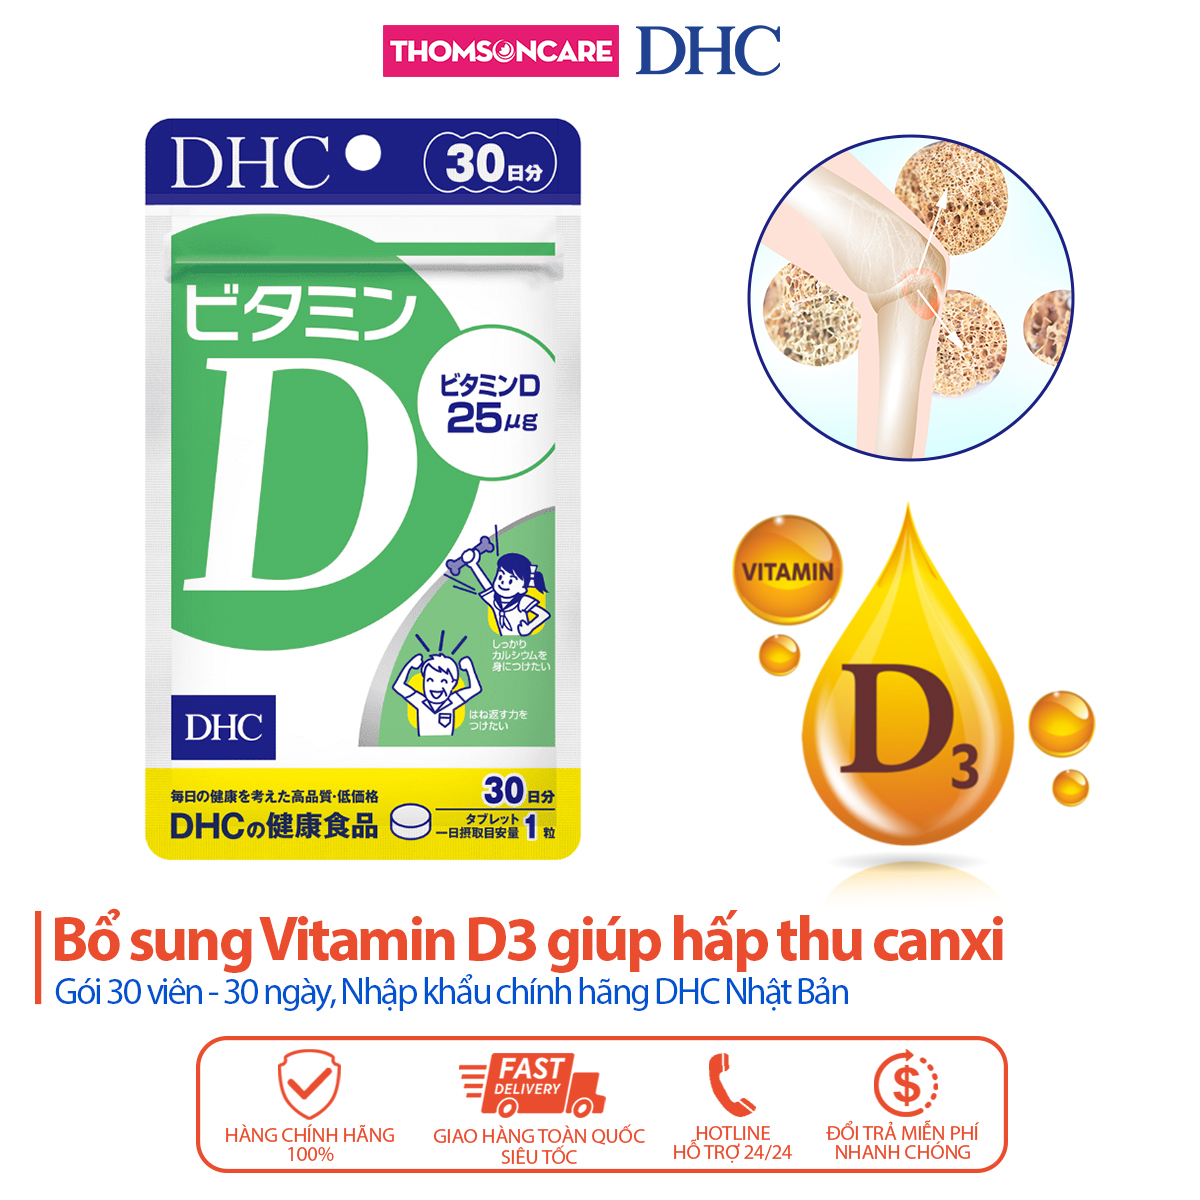 Viên uống bổ sung vitamin D3 DHC Vitamin D - giúp hấp thu canxi tối đa gói 30 viên - Thomsoncare